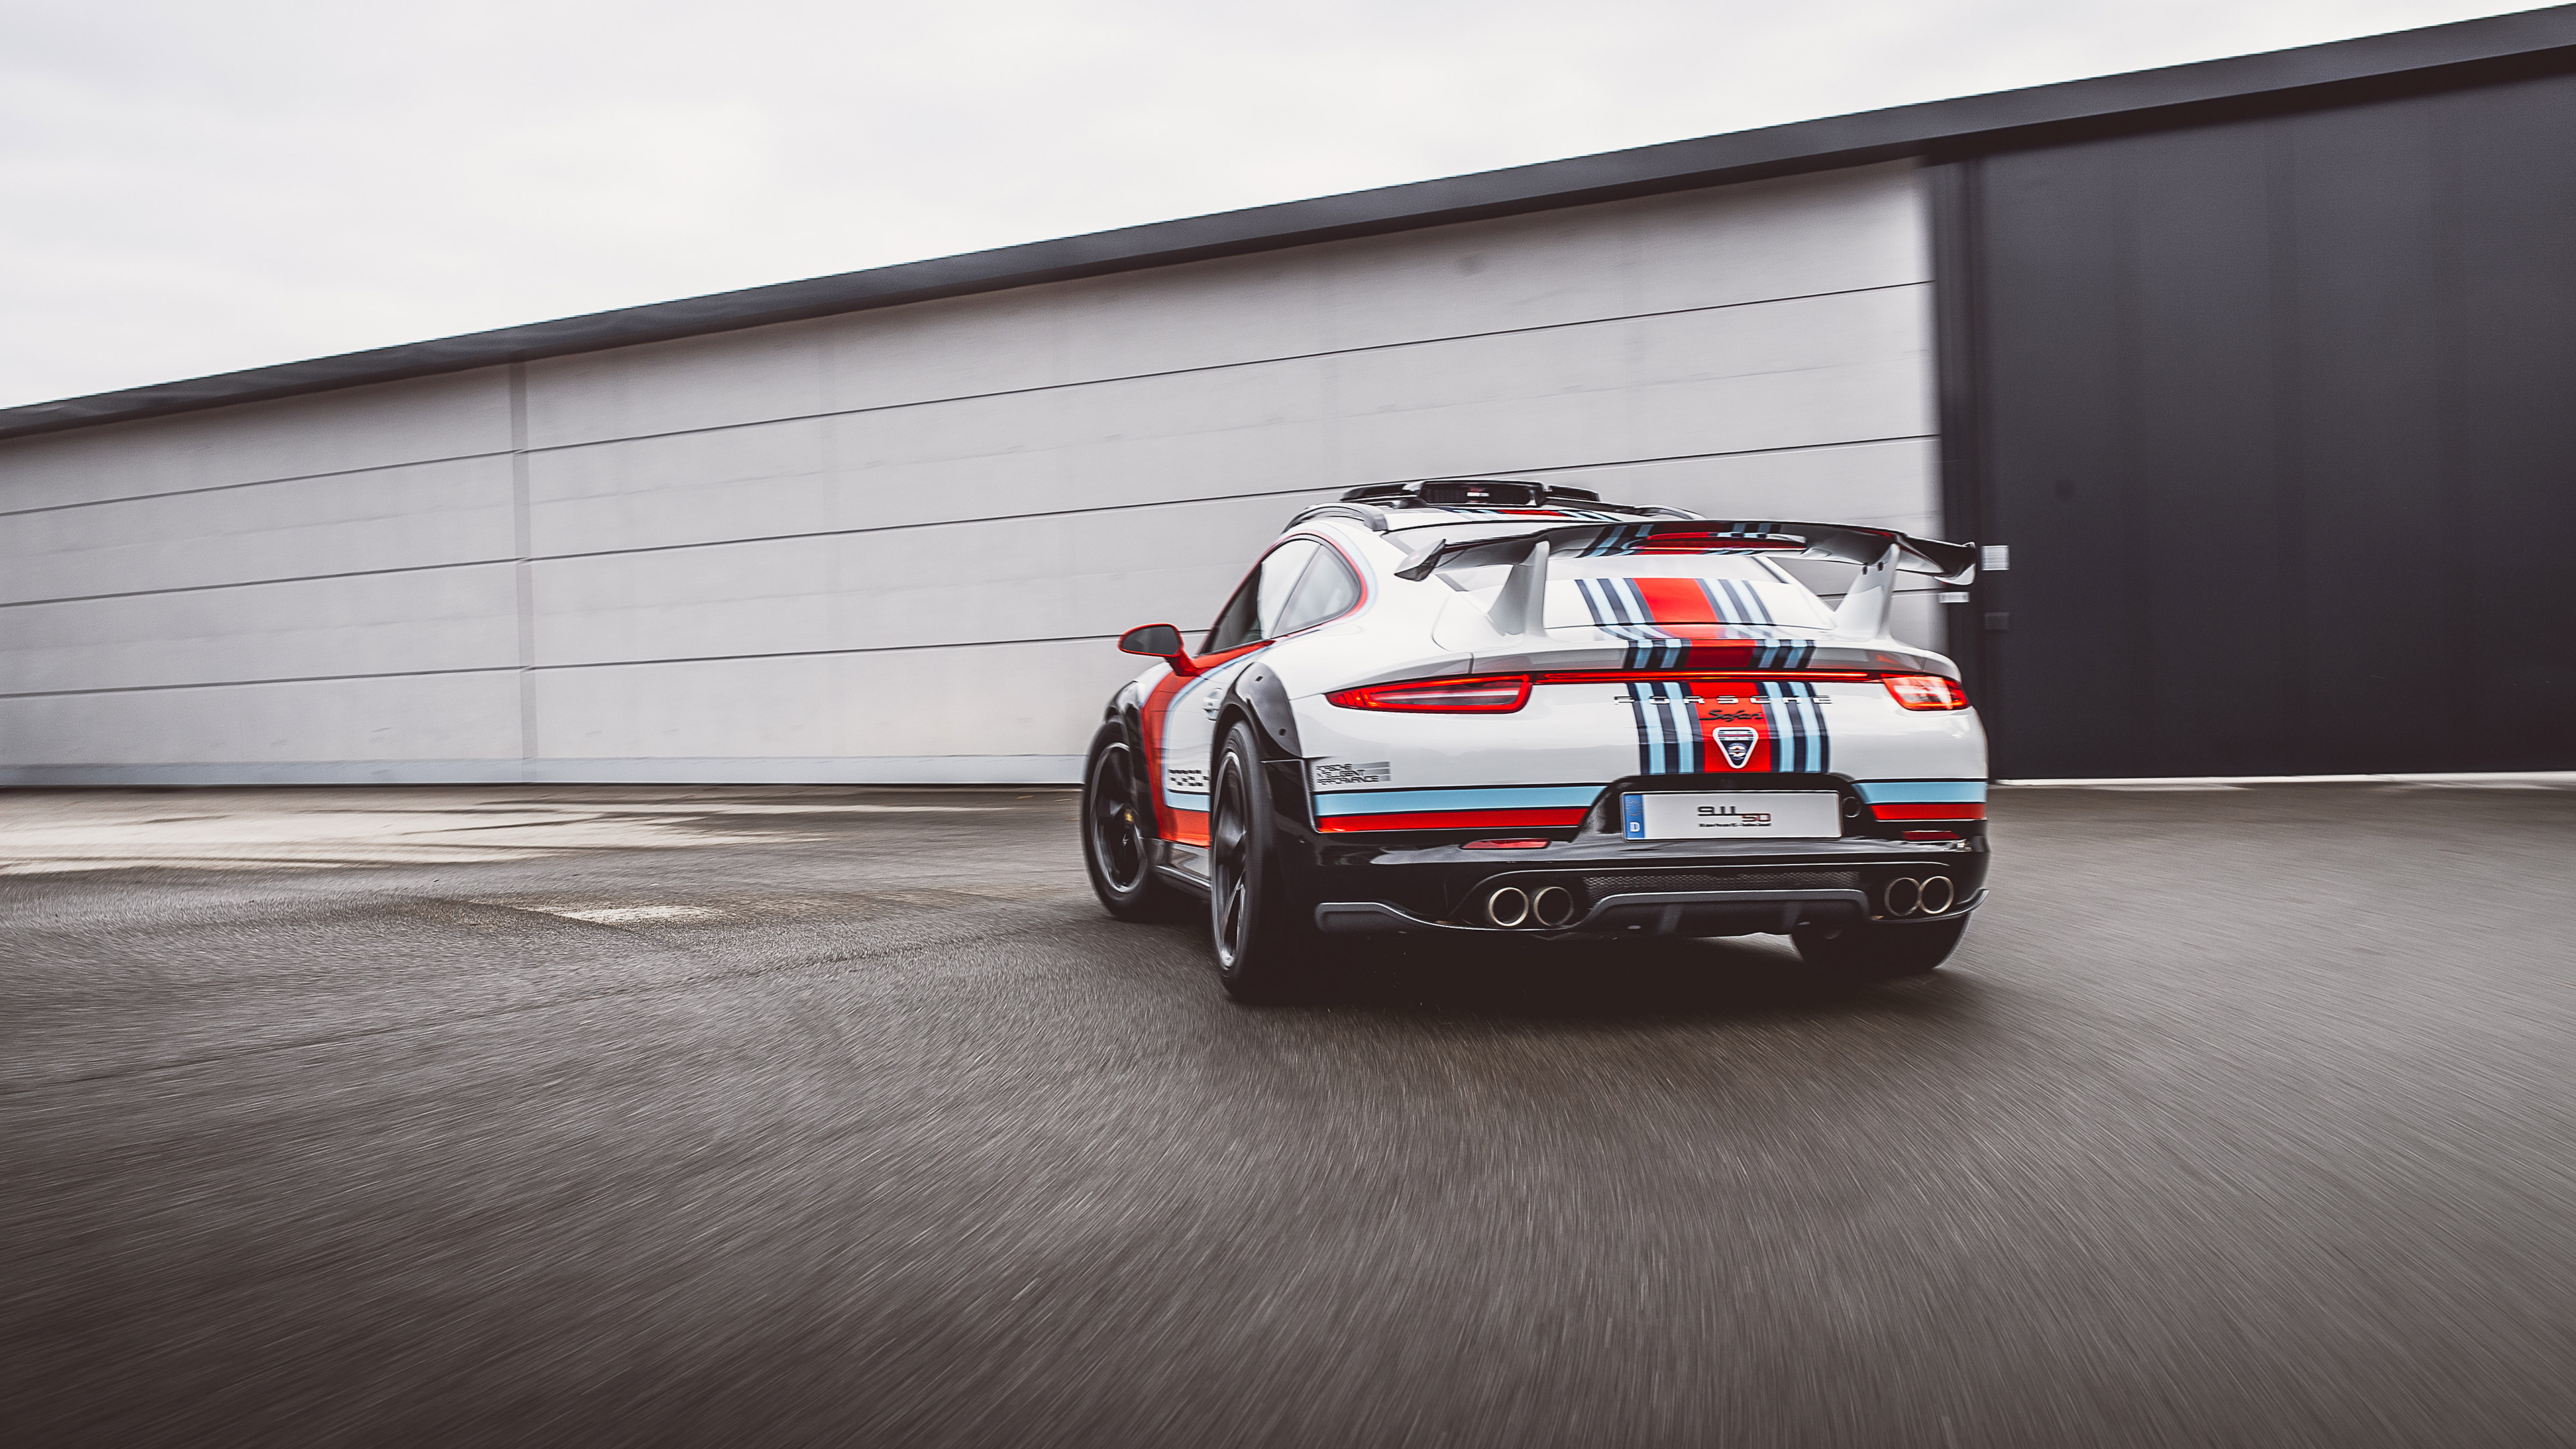  2012 Porsche 911 Vision Safari Concept Wallpaper.